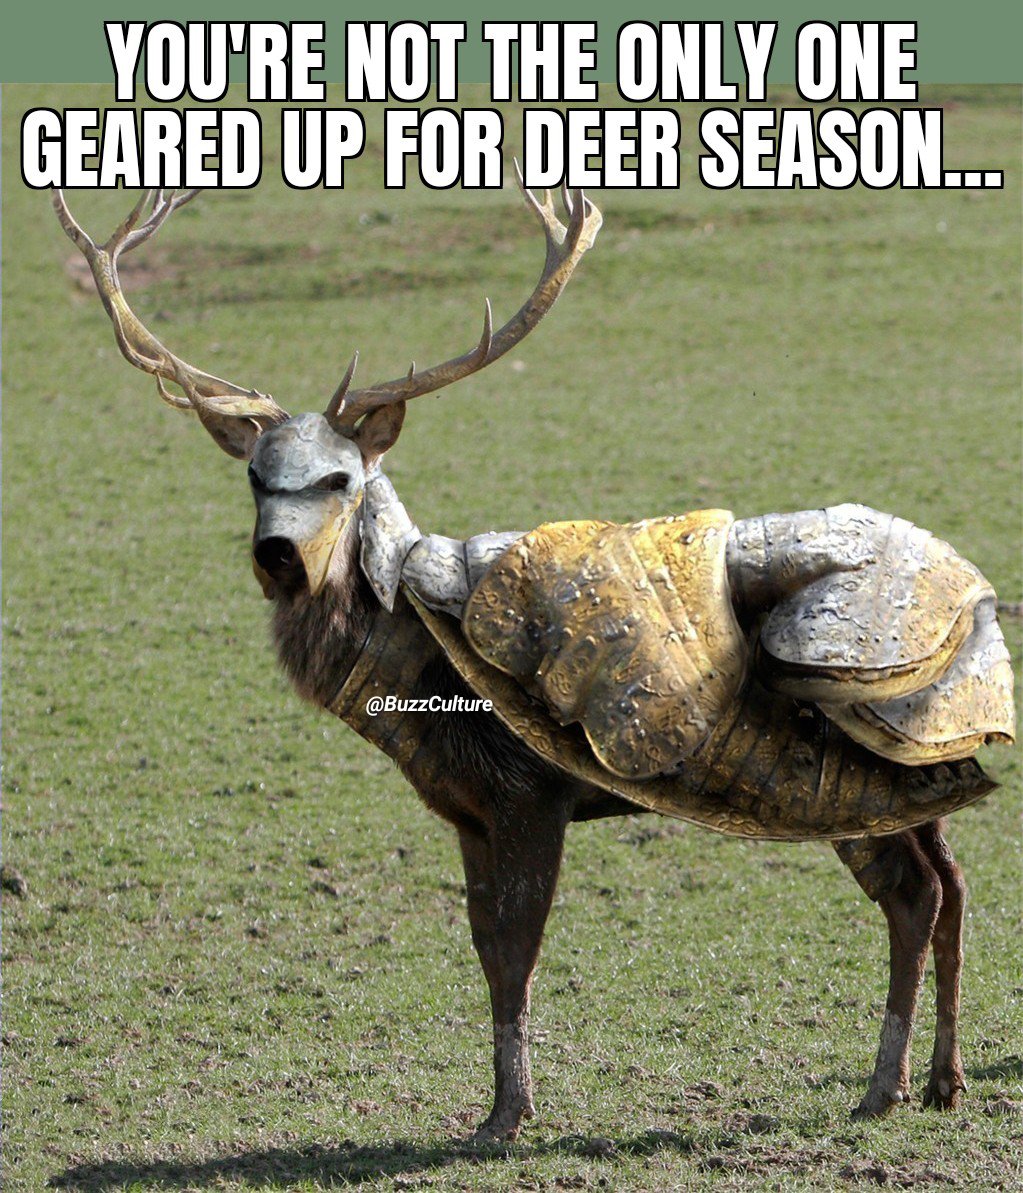 We'll see... #SundayFunday #WeekendFun #Funny #Hunting #Deer #FunTimes #DeerSeason #Weekend